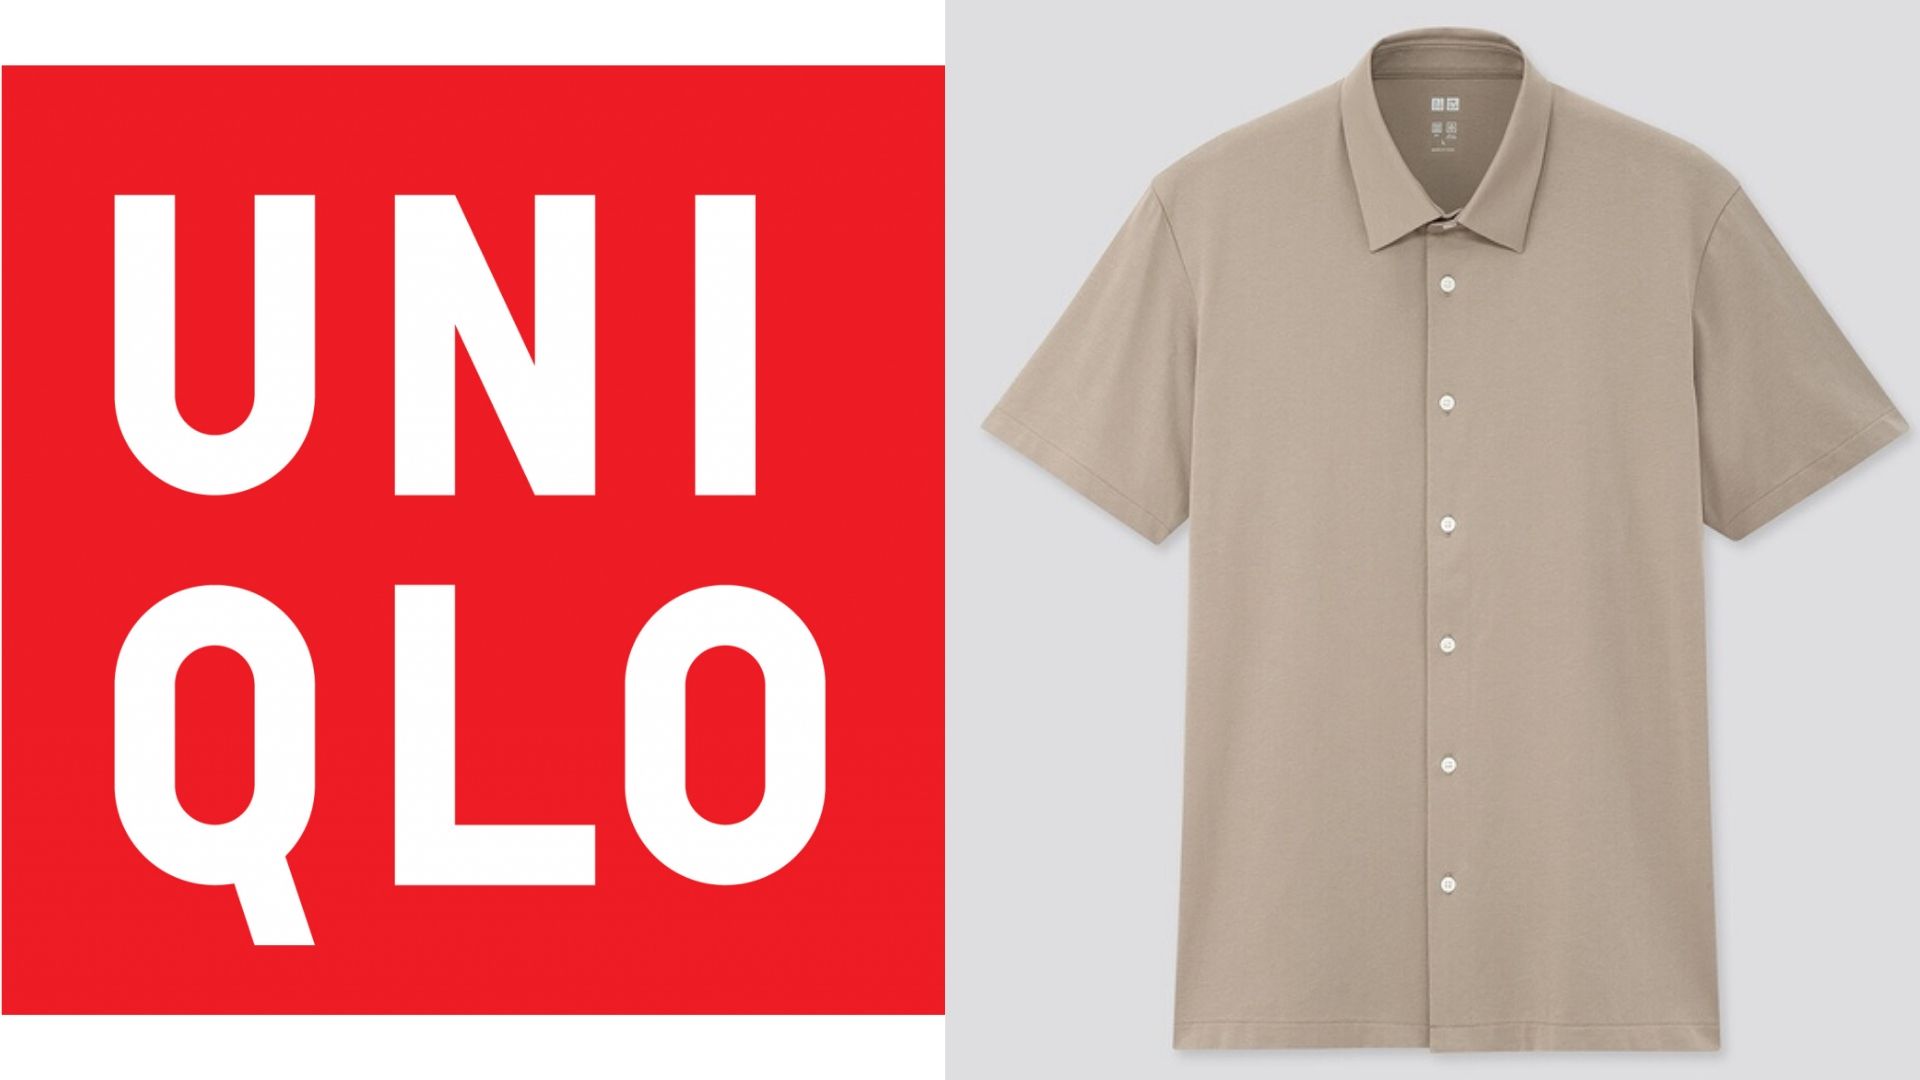 ユニクロのエアリズムポロシャツフルオープンは1990円で買える最強半袖シャツ Ander Mag